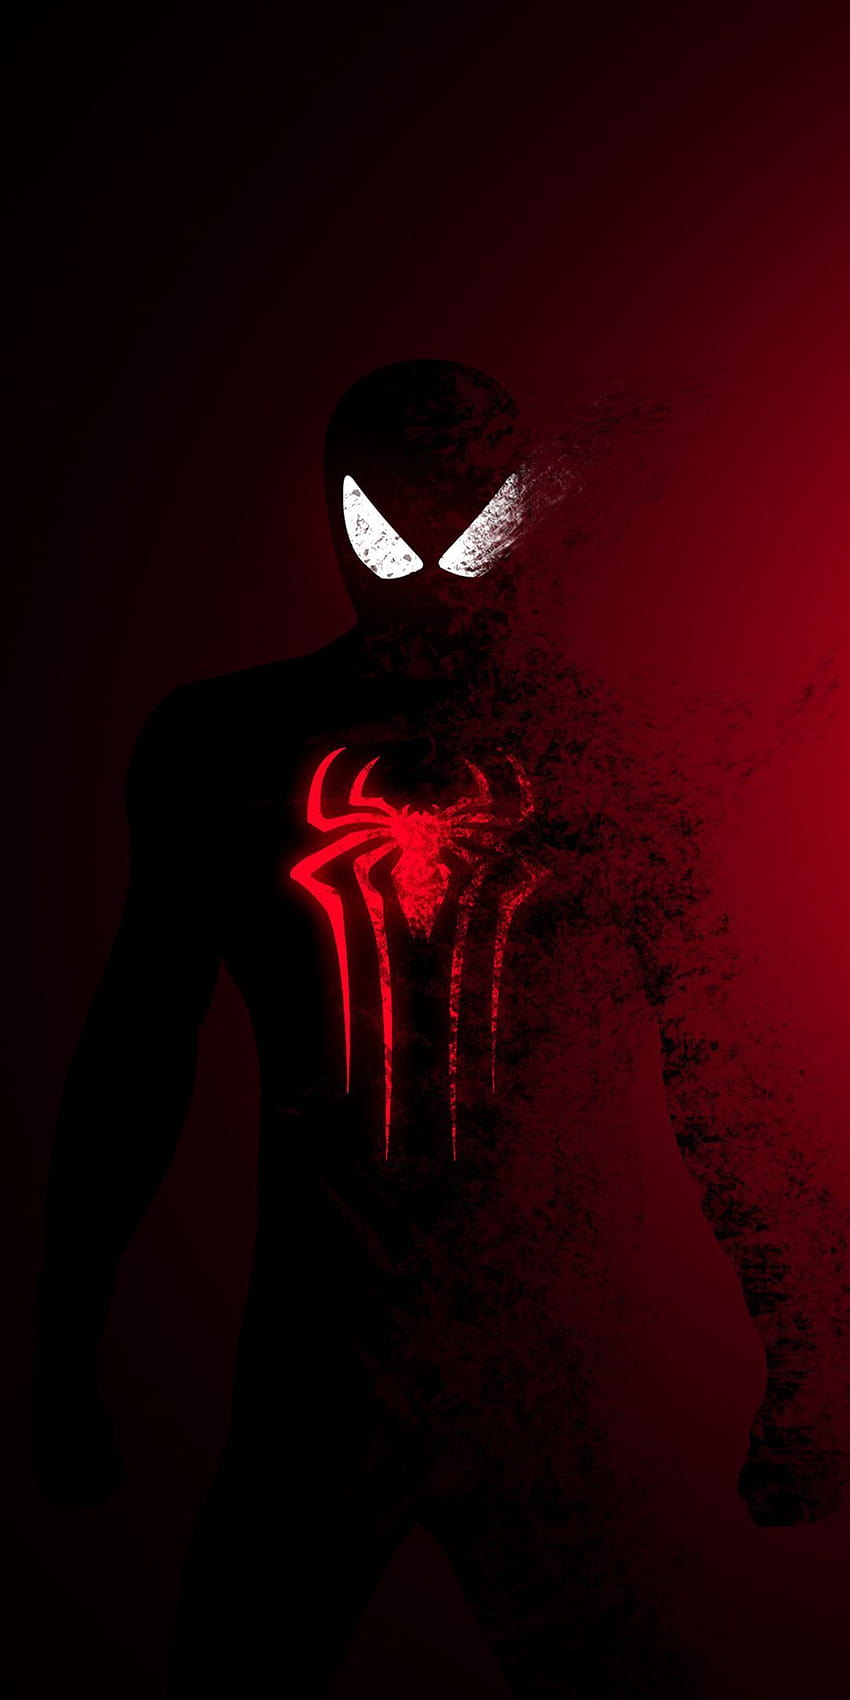 Spider Man Dark, amoled spider man HD phone wallpaper